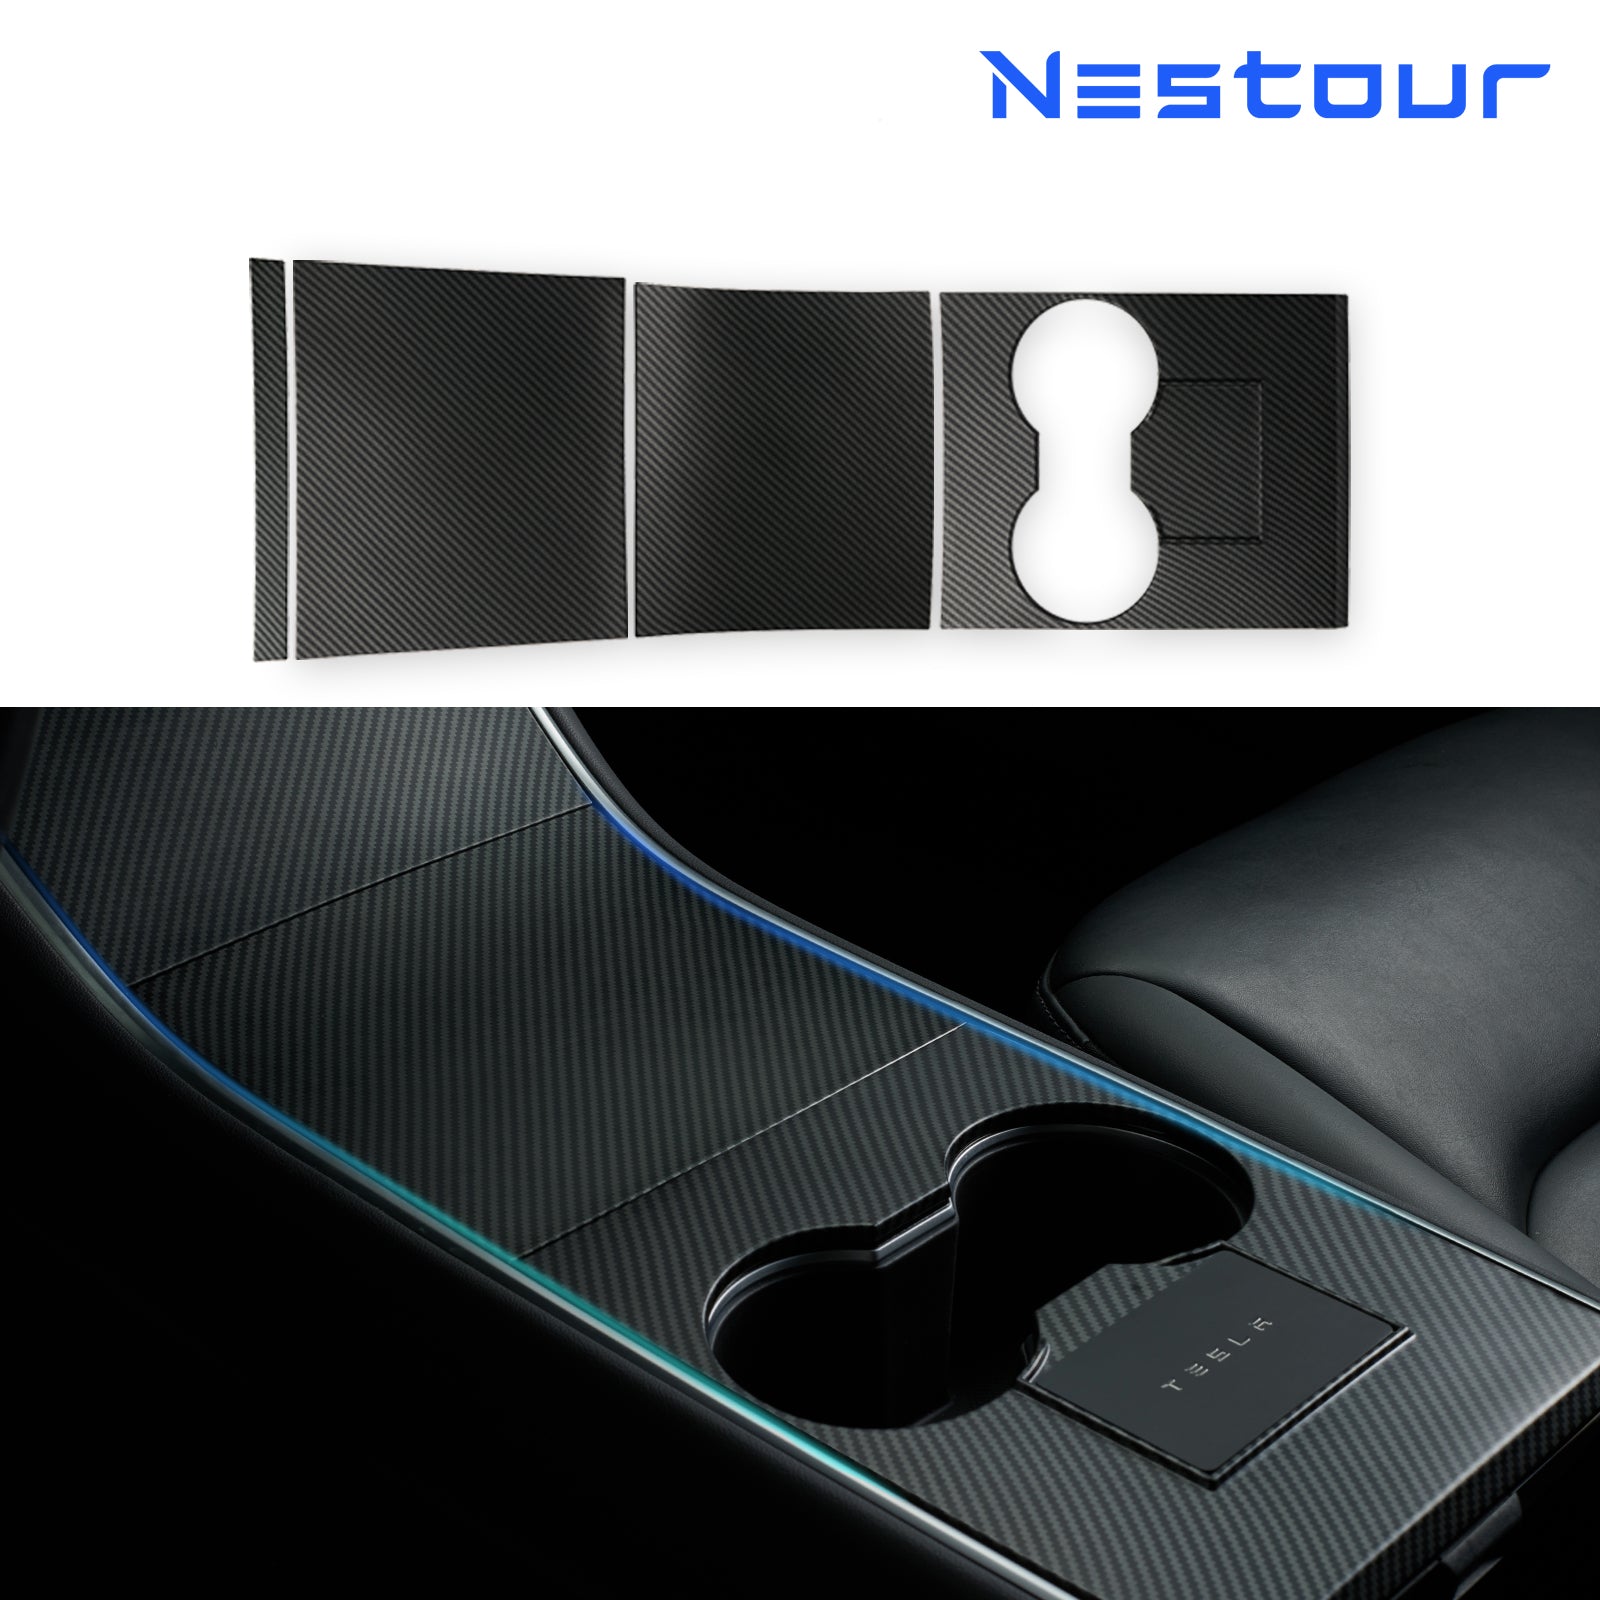 Nestour 2016-2020 Model 3 / Y Console Wrap (Matte Carbon Fiber)